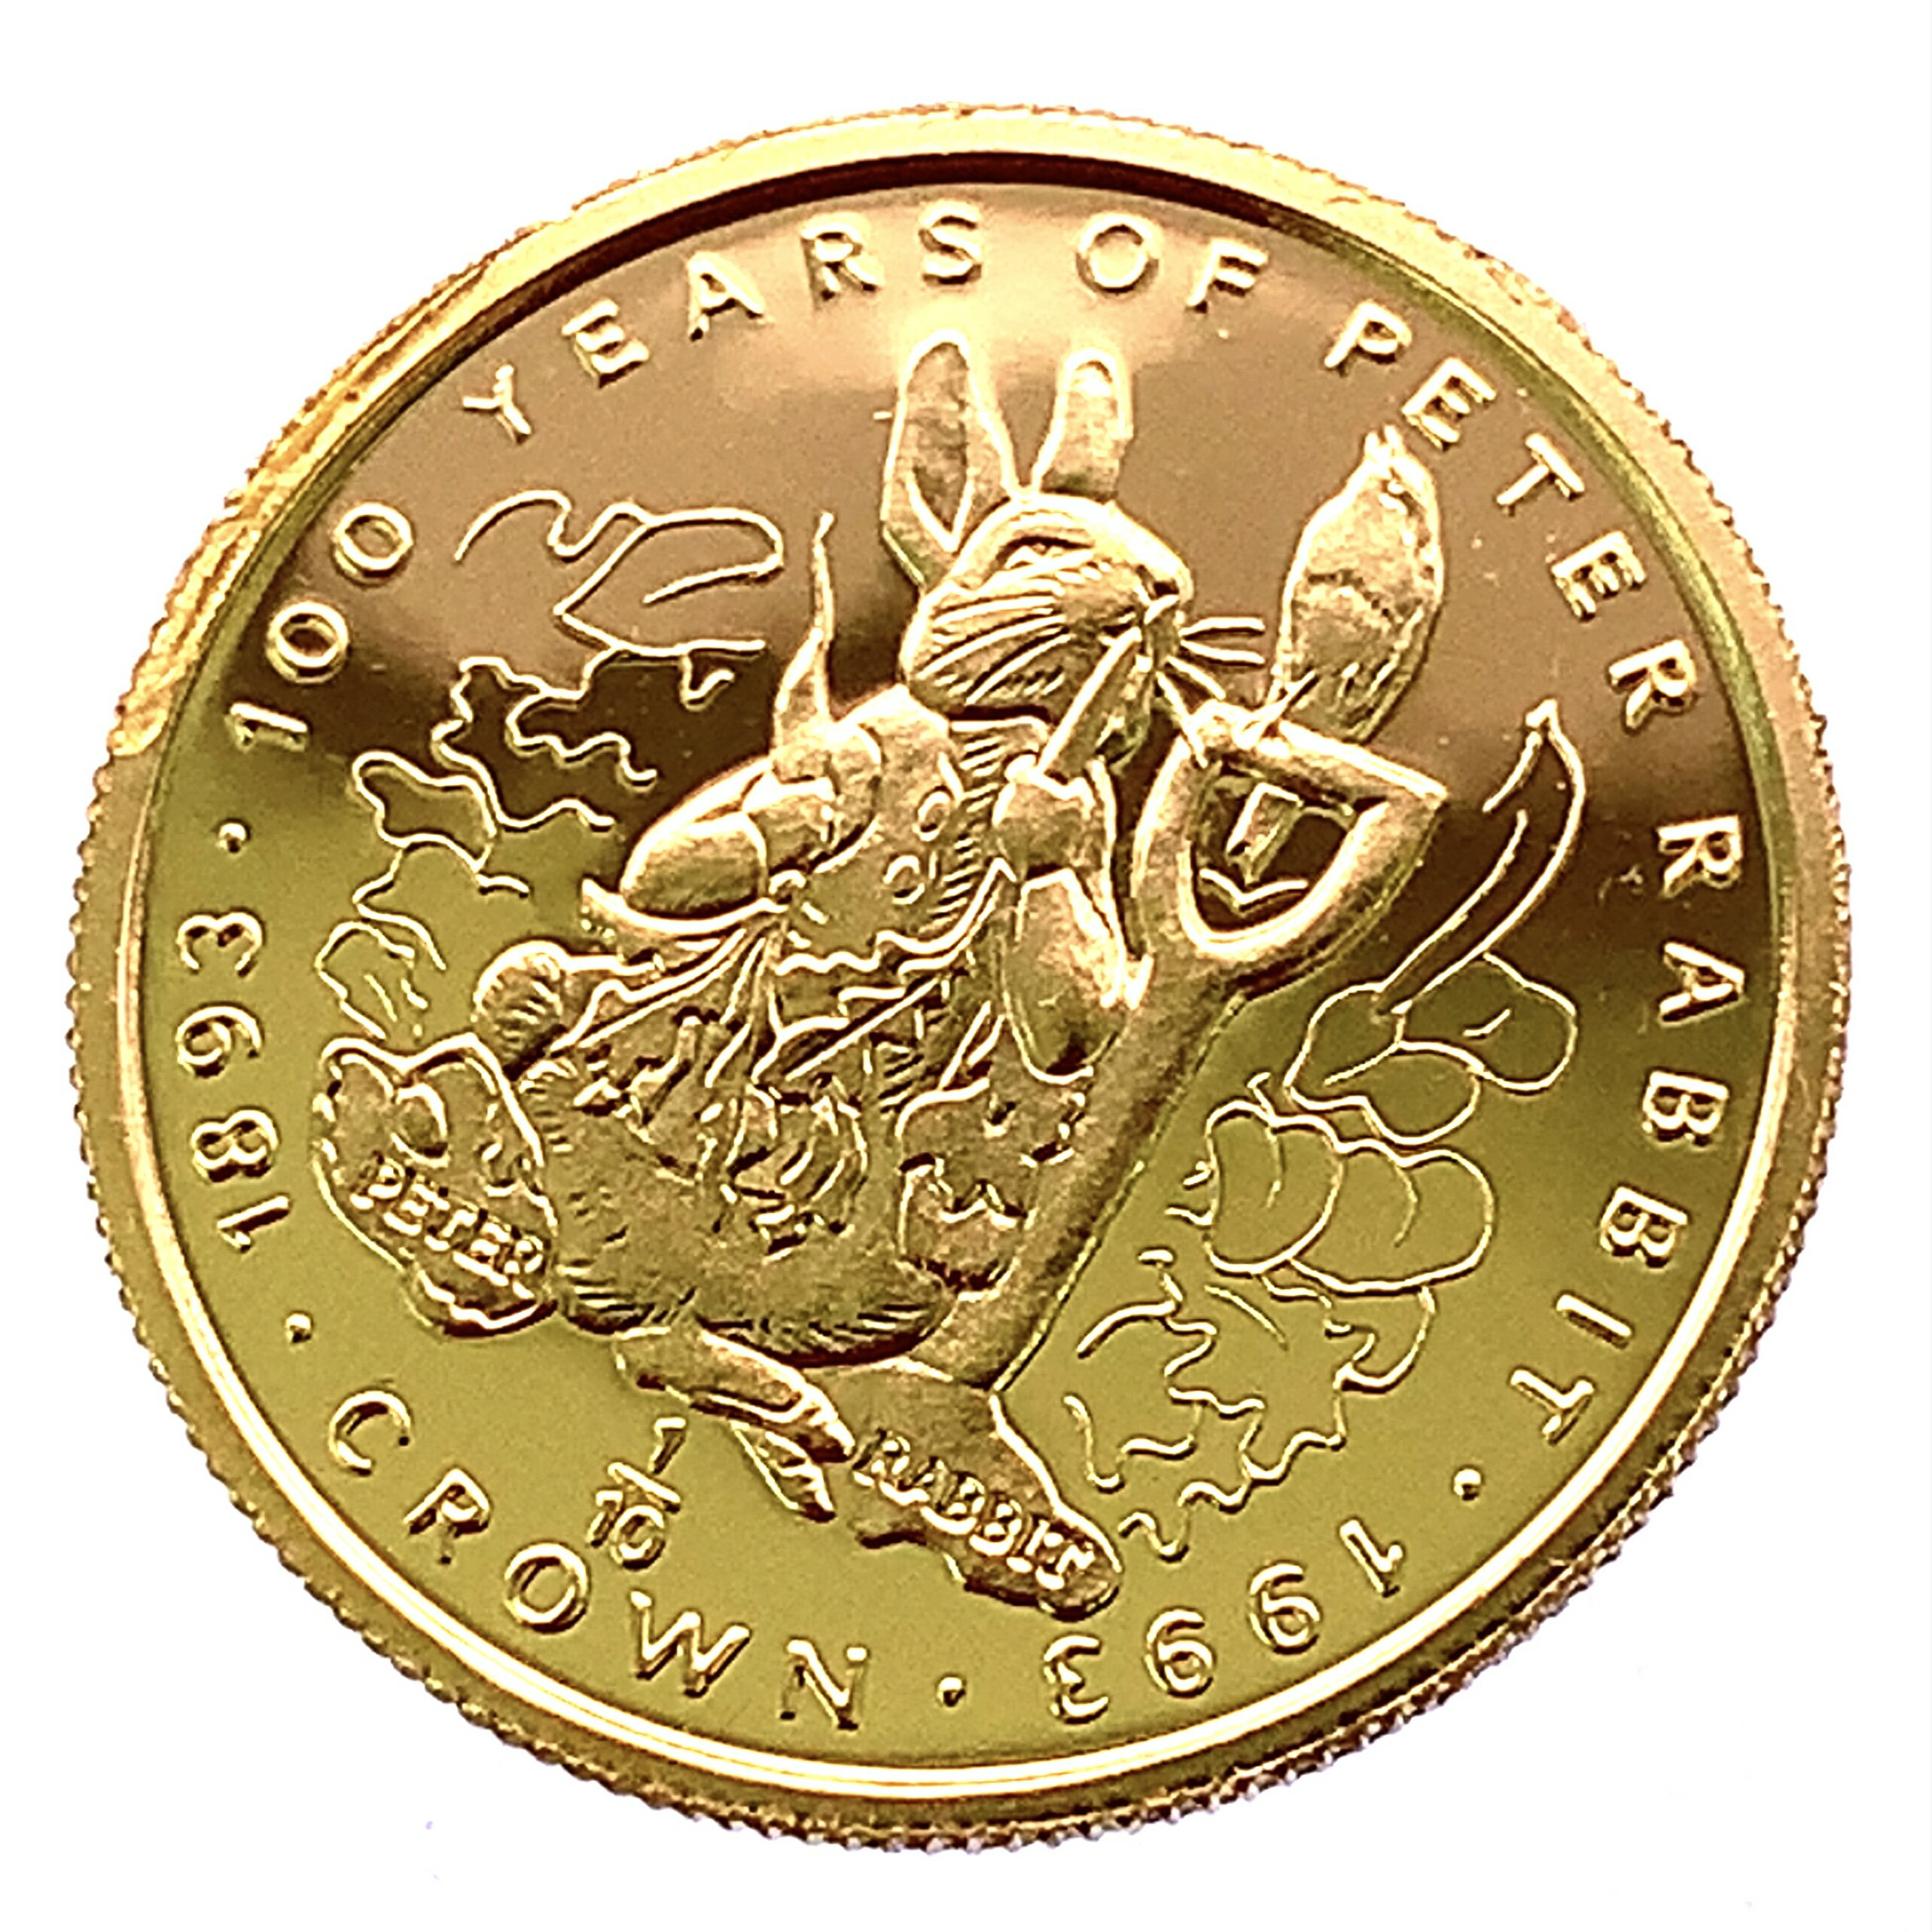 ピーターラビット金貨 ジブラルタル エリザベス女王 1/10オンス 1993年 3.1g 24金 純金 イエローゴールド コレクション Gold